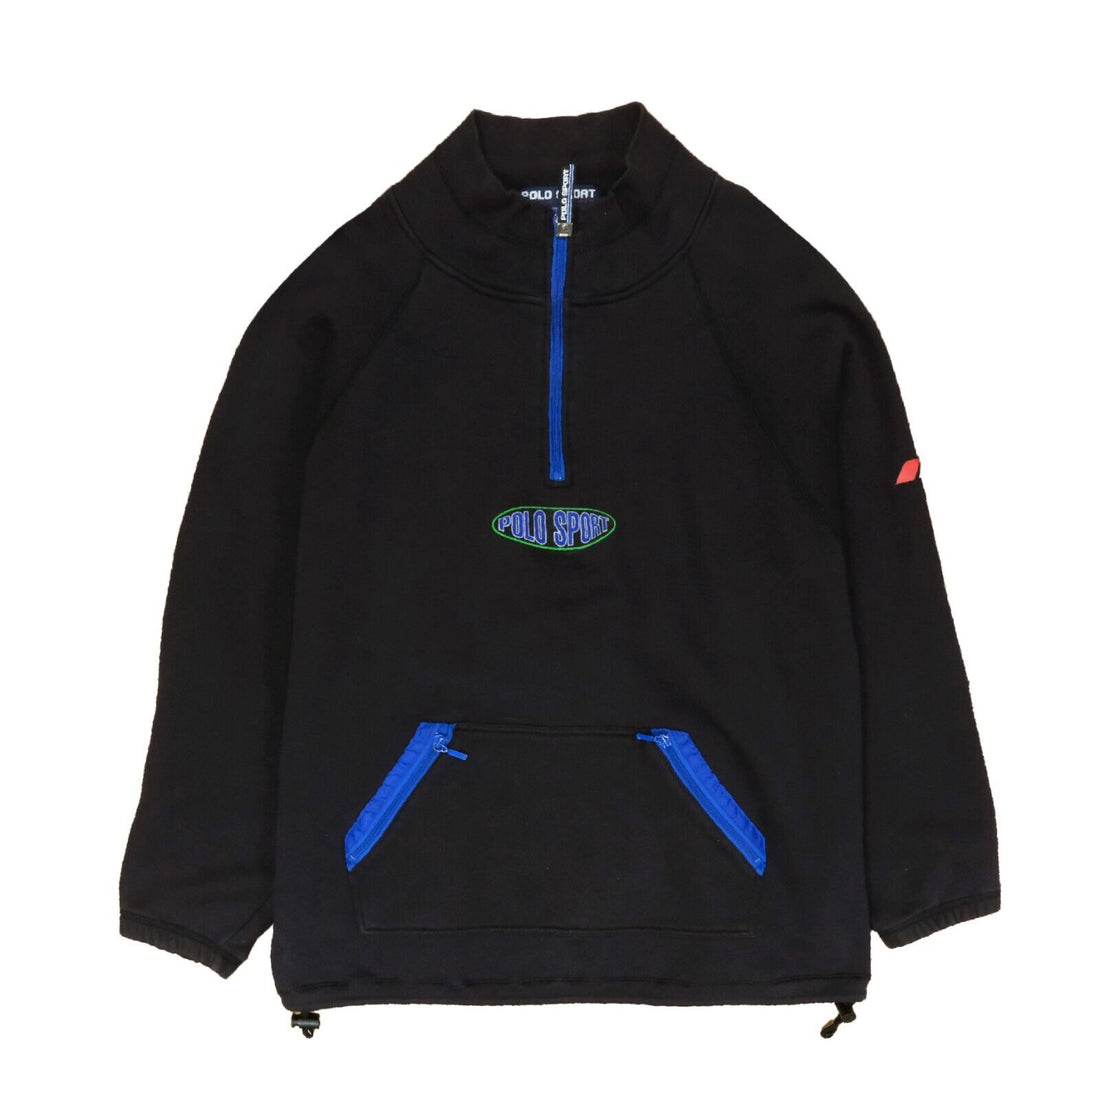 Vintage Polo Sport Ralph Lauren 1/4 Zip Pullover Sweatshirt Size XL Black 90s